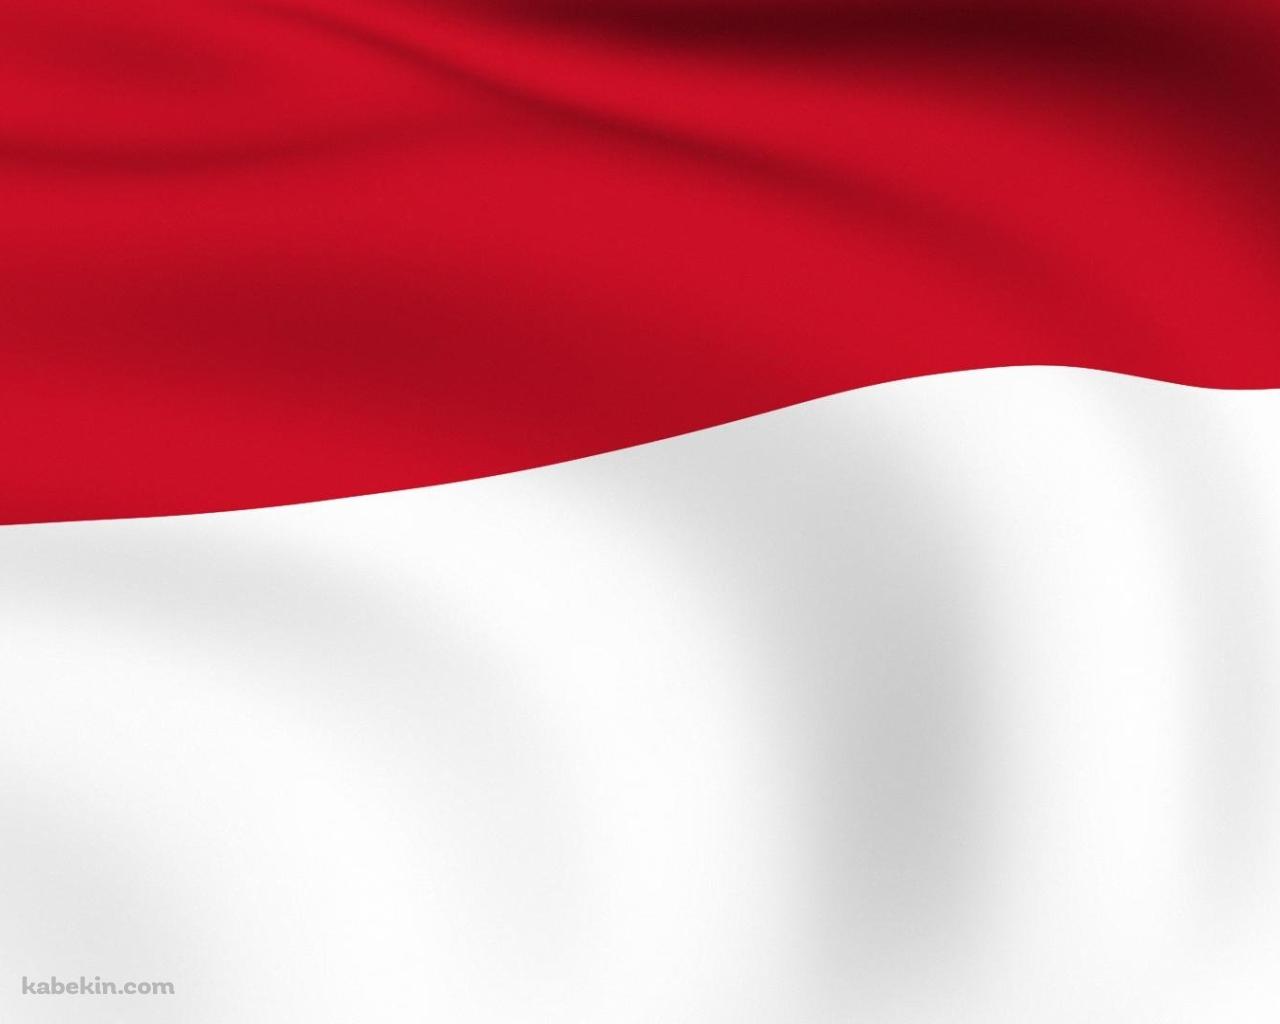 インドネシアの国旗の壁紙(1280px x 1024px) 高画質 PC・デスクトップ用